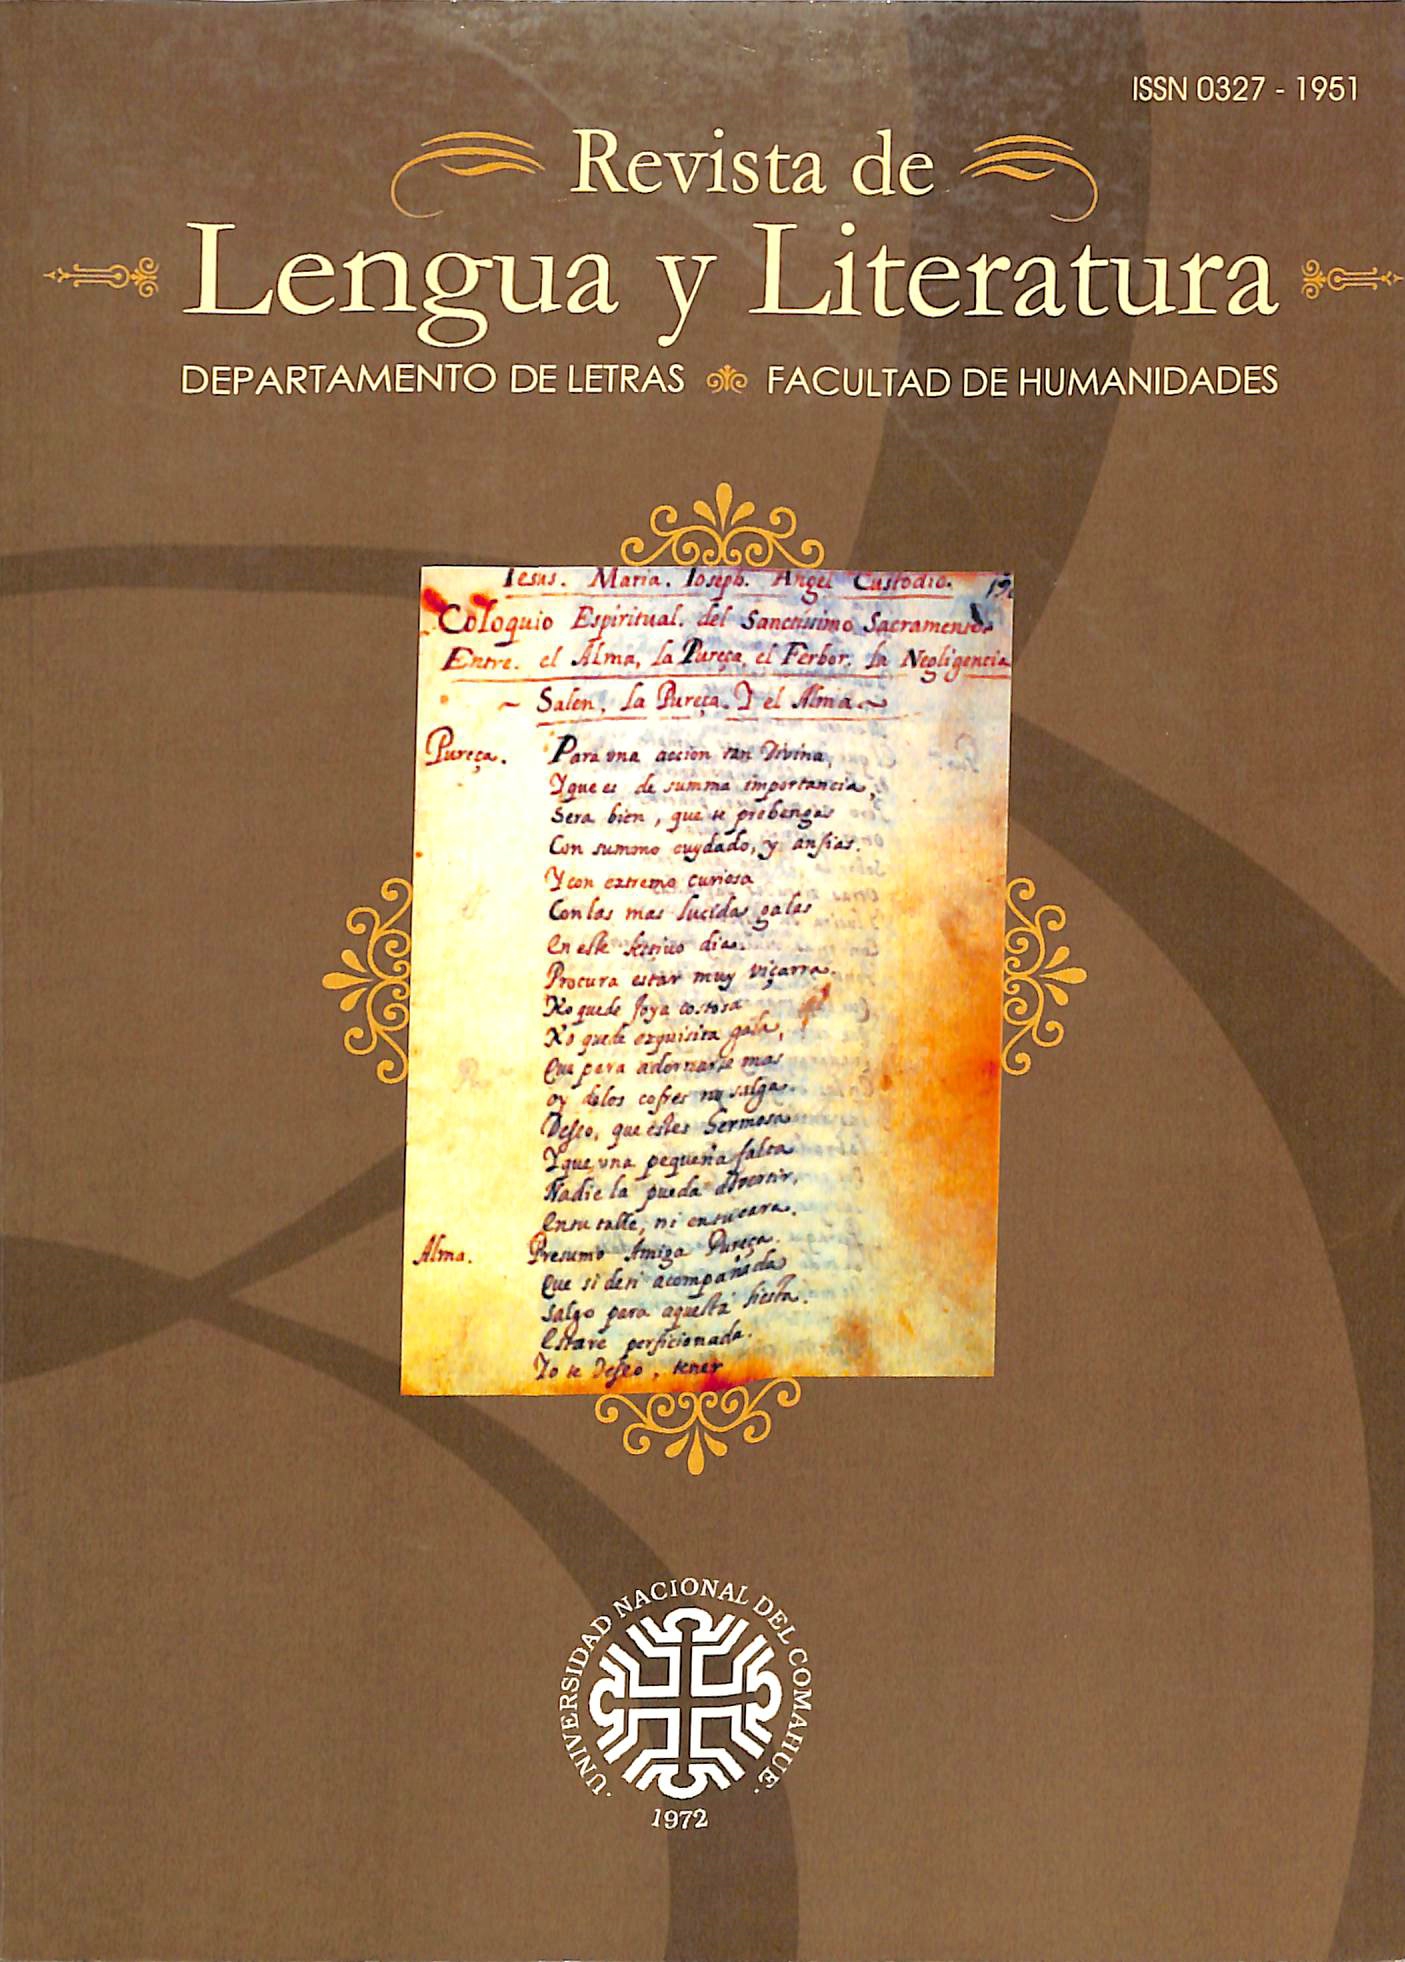 					Ver Núm. 34 (2006): Revista de Lengua y Literatura
				